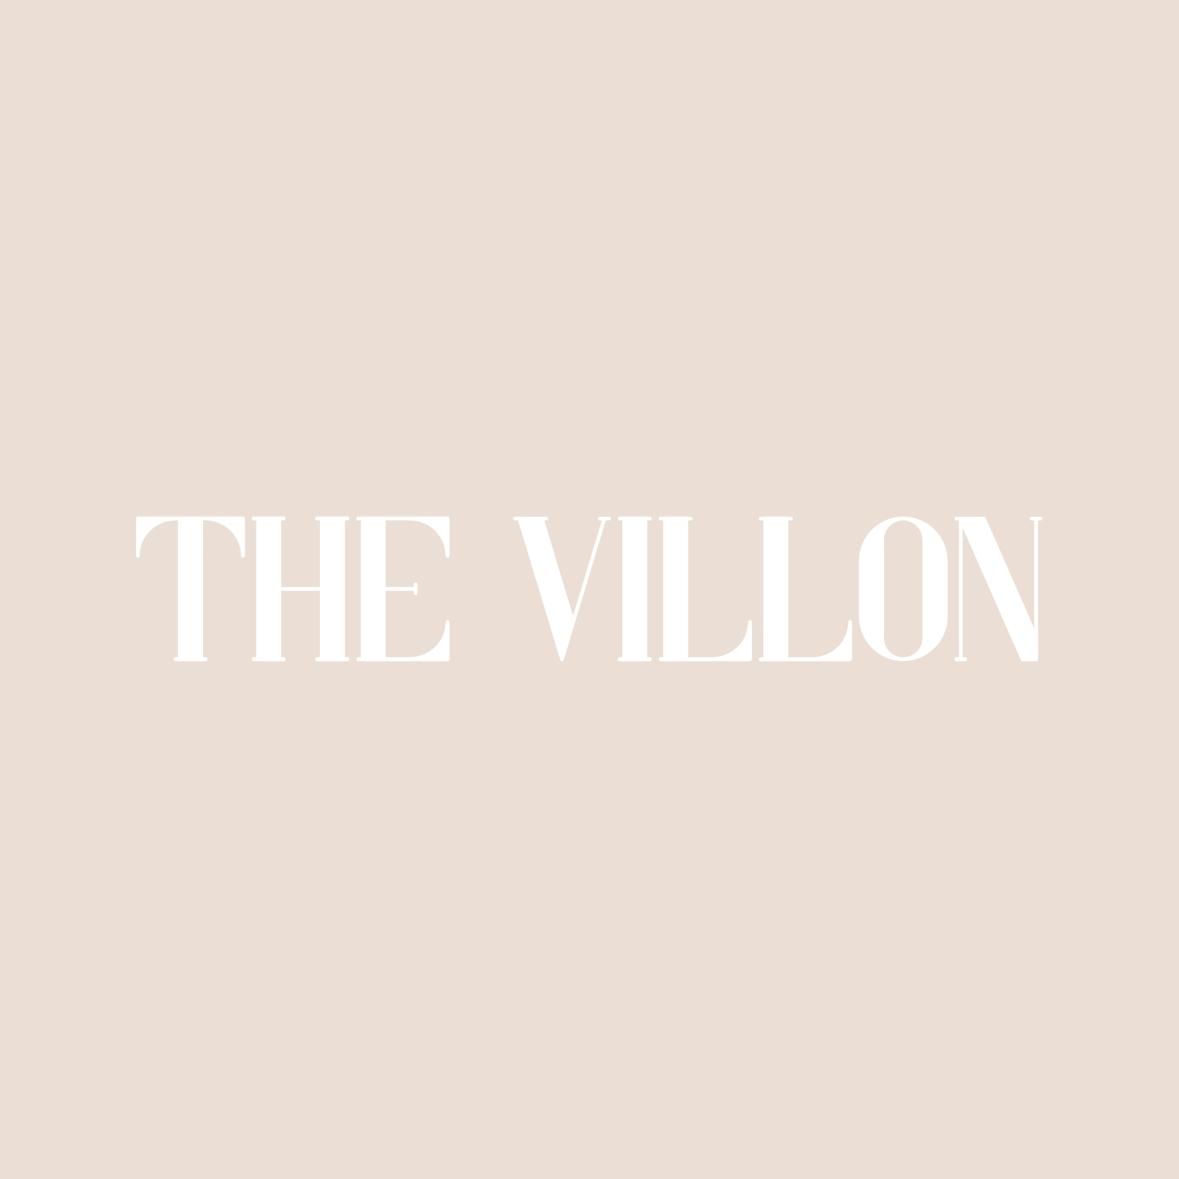 The Villon's images